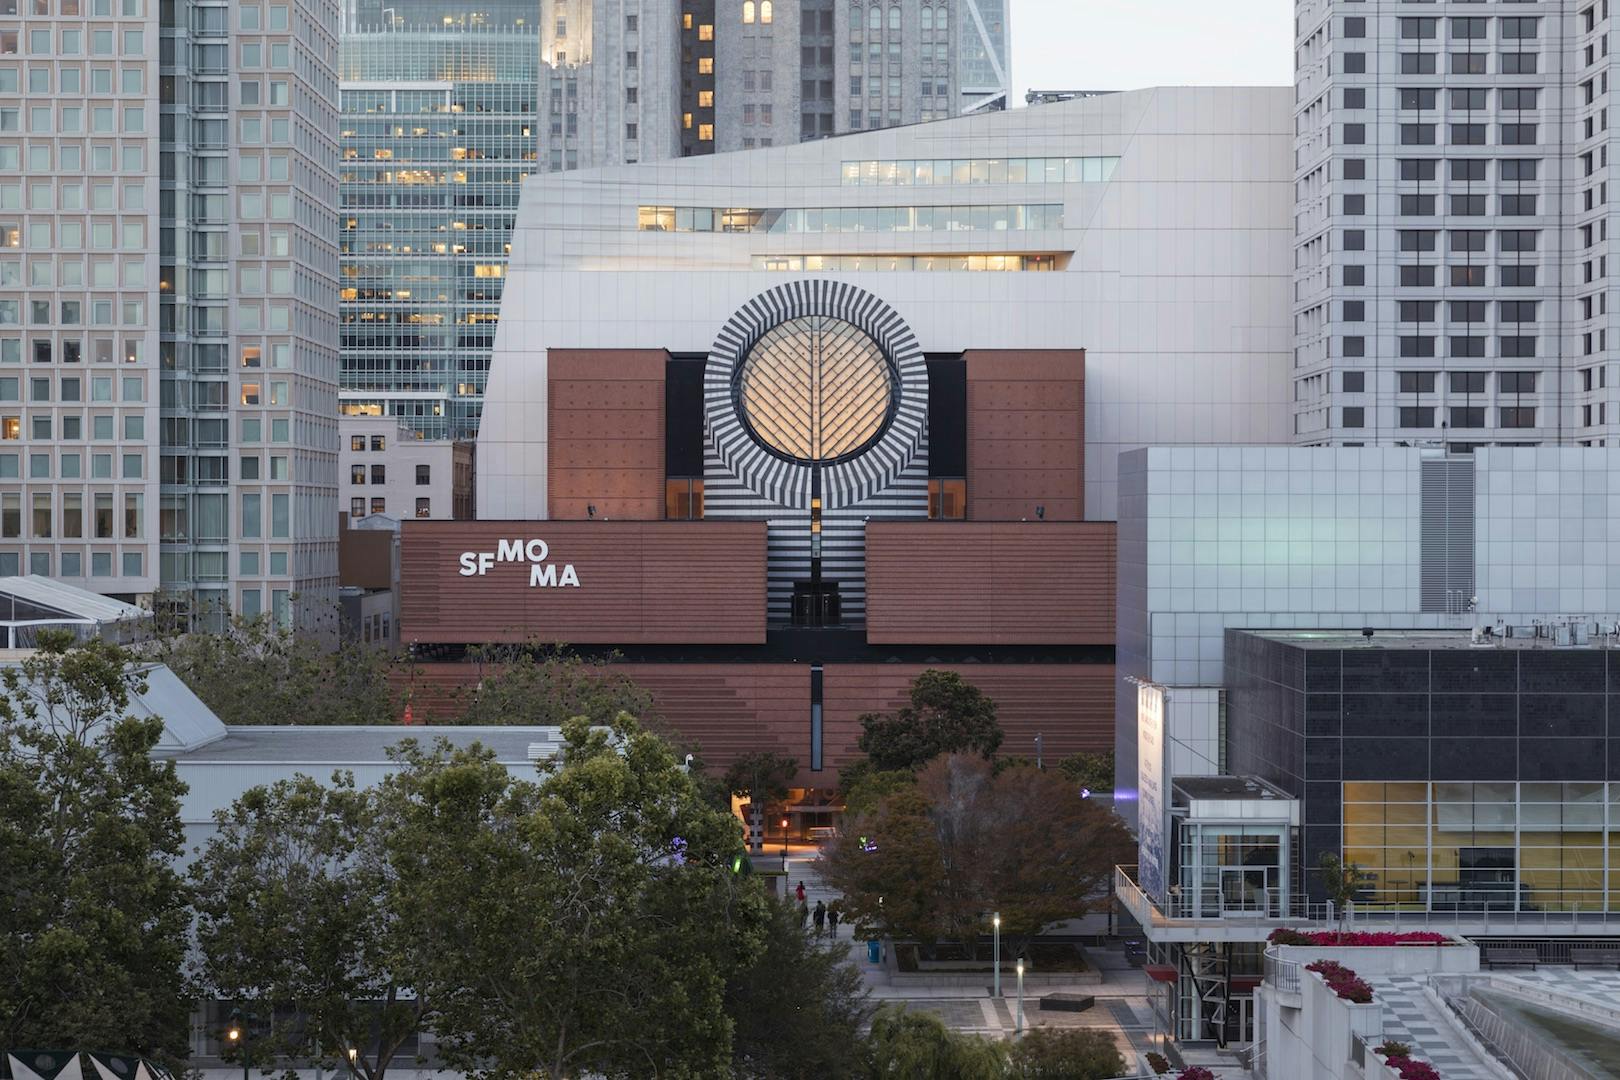 Bilhete de entrada para o Museu de Arte Moderna de São Francisco (SFMOMA)